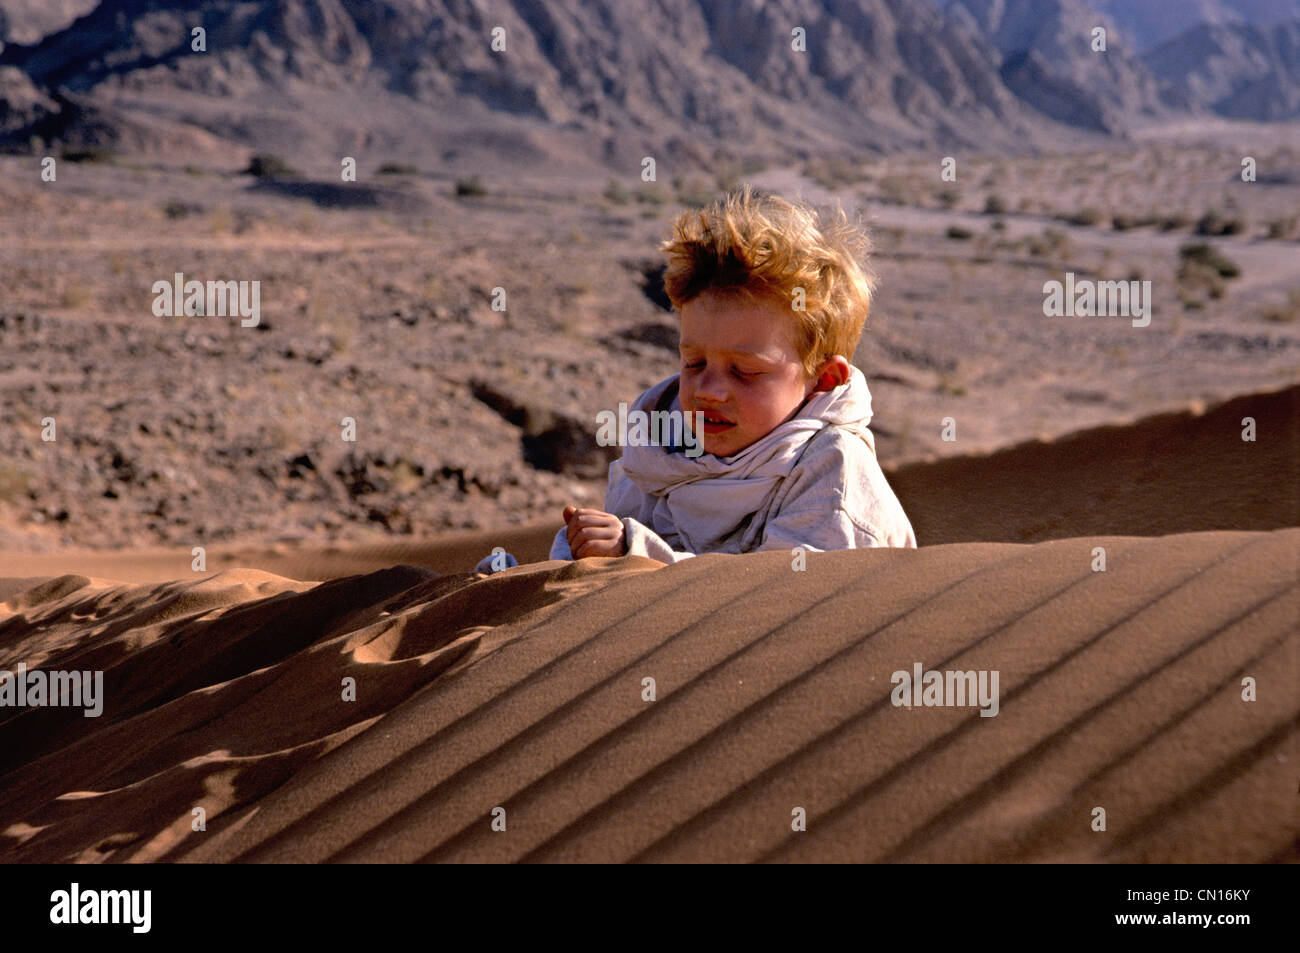 Bambino su una duna di sabbia - modello di rilascio n/a Foto Stock